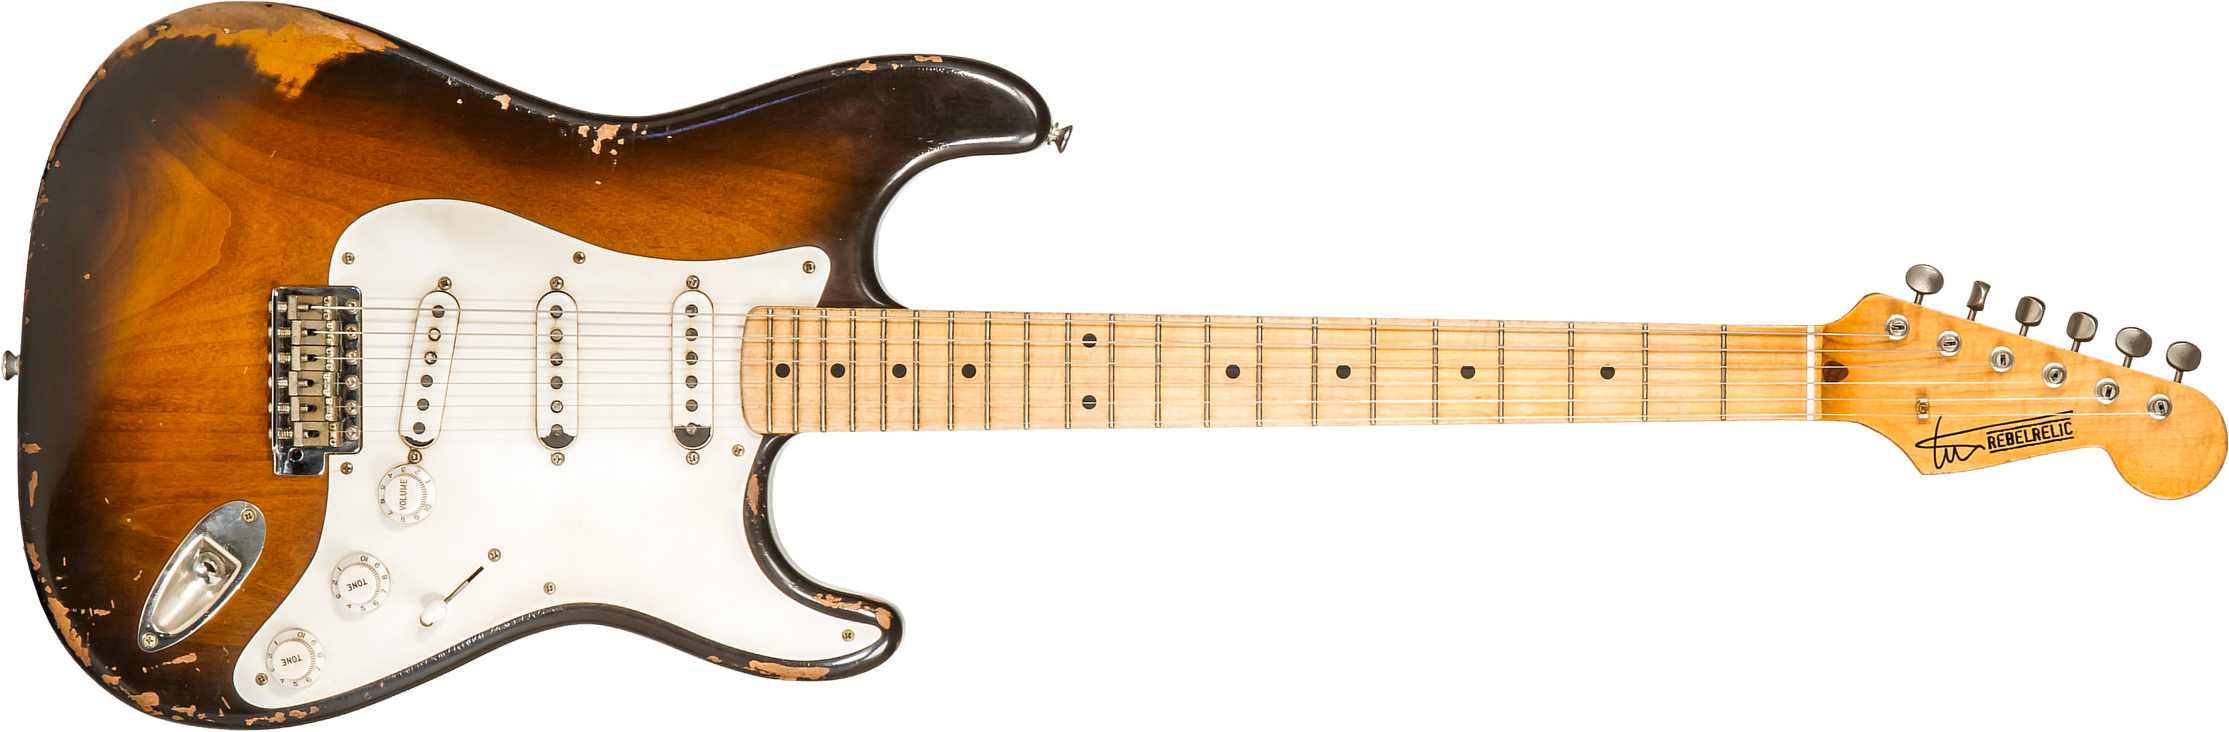 Rebelrelic S-series 54 3s Trem Mn #230103 - Medium Aged 2-tone Sunburst - Guitare Électrique Forme Str - Main picture